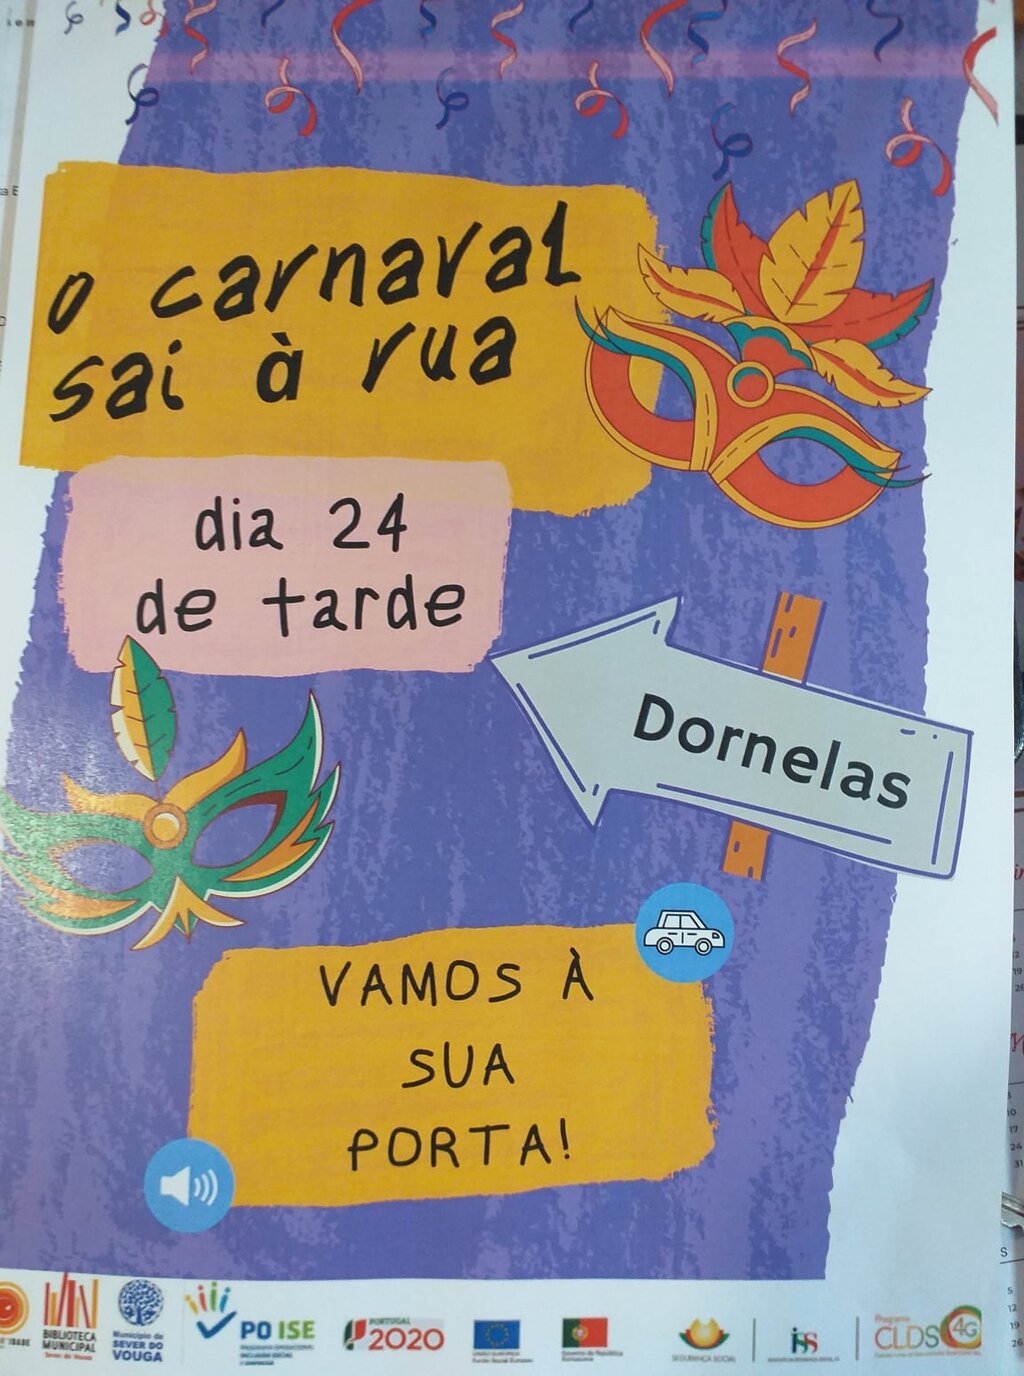 24 fev - carnaval sai à rua - Dornelas